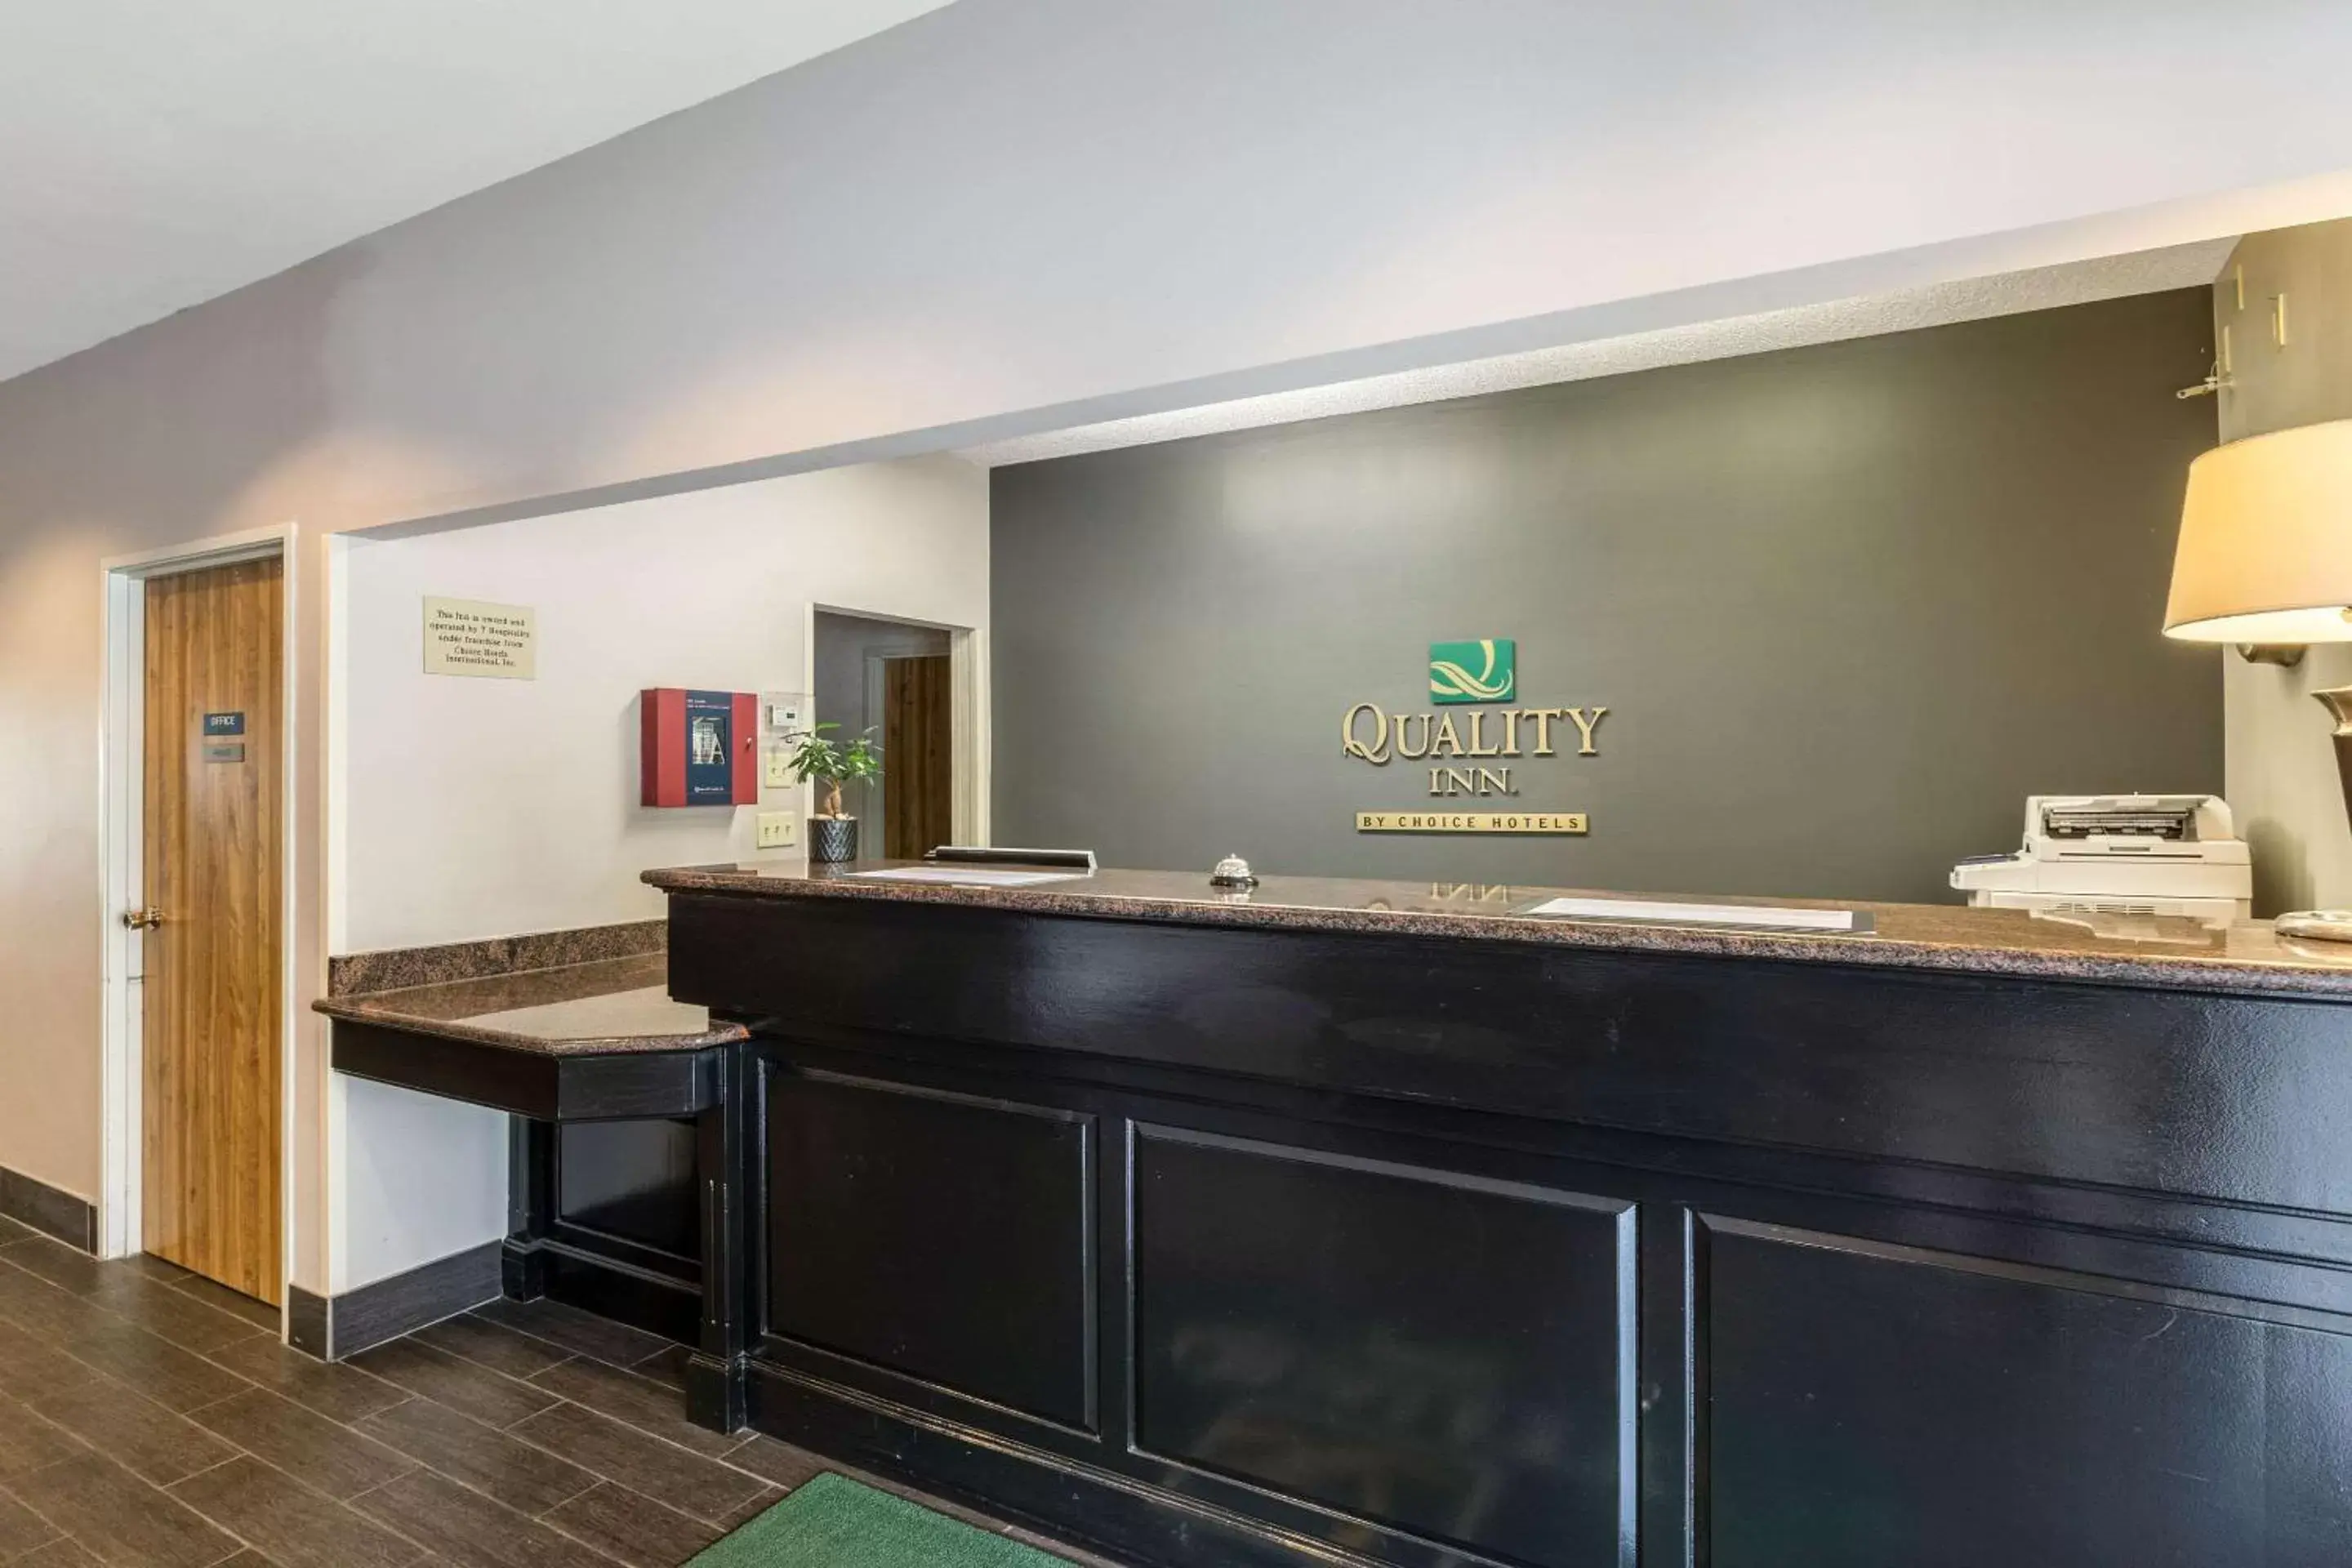 Lobby or reception, Lobby/Reception in Quality Inn Kearney